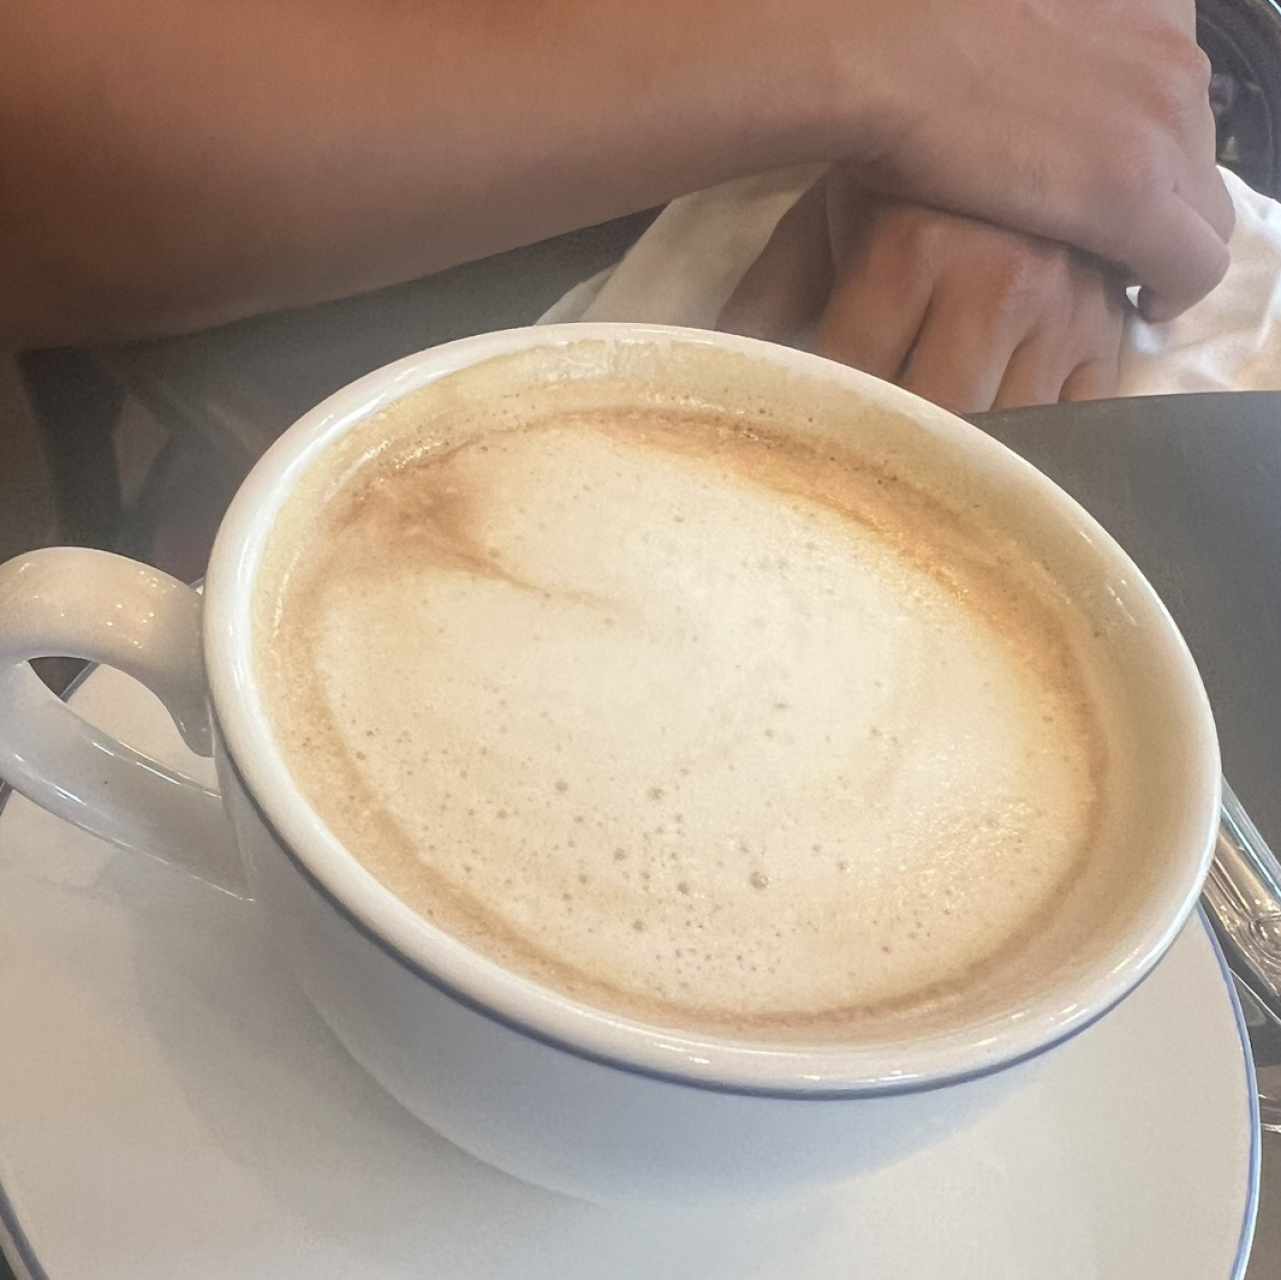 Cappuccino 